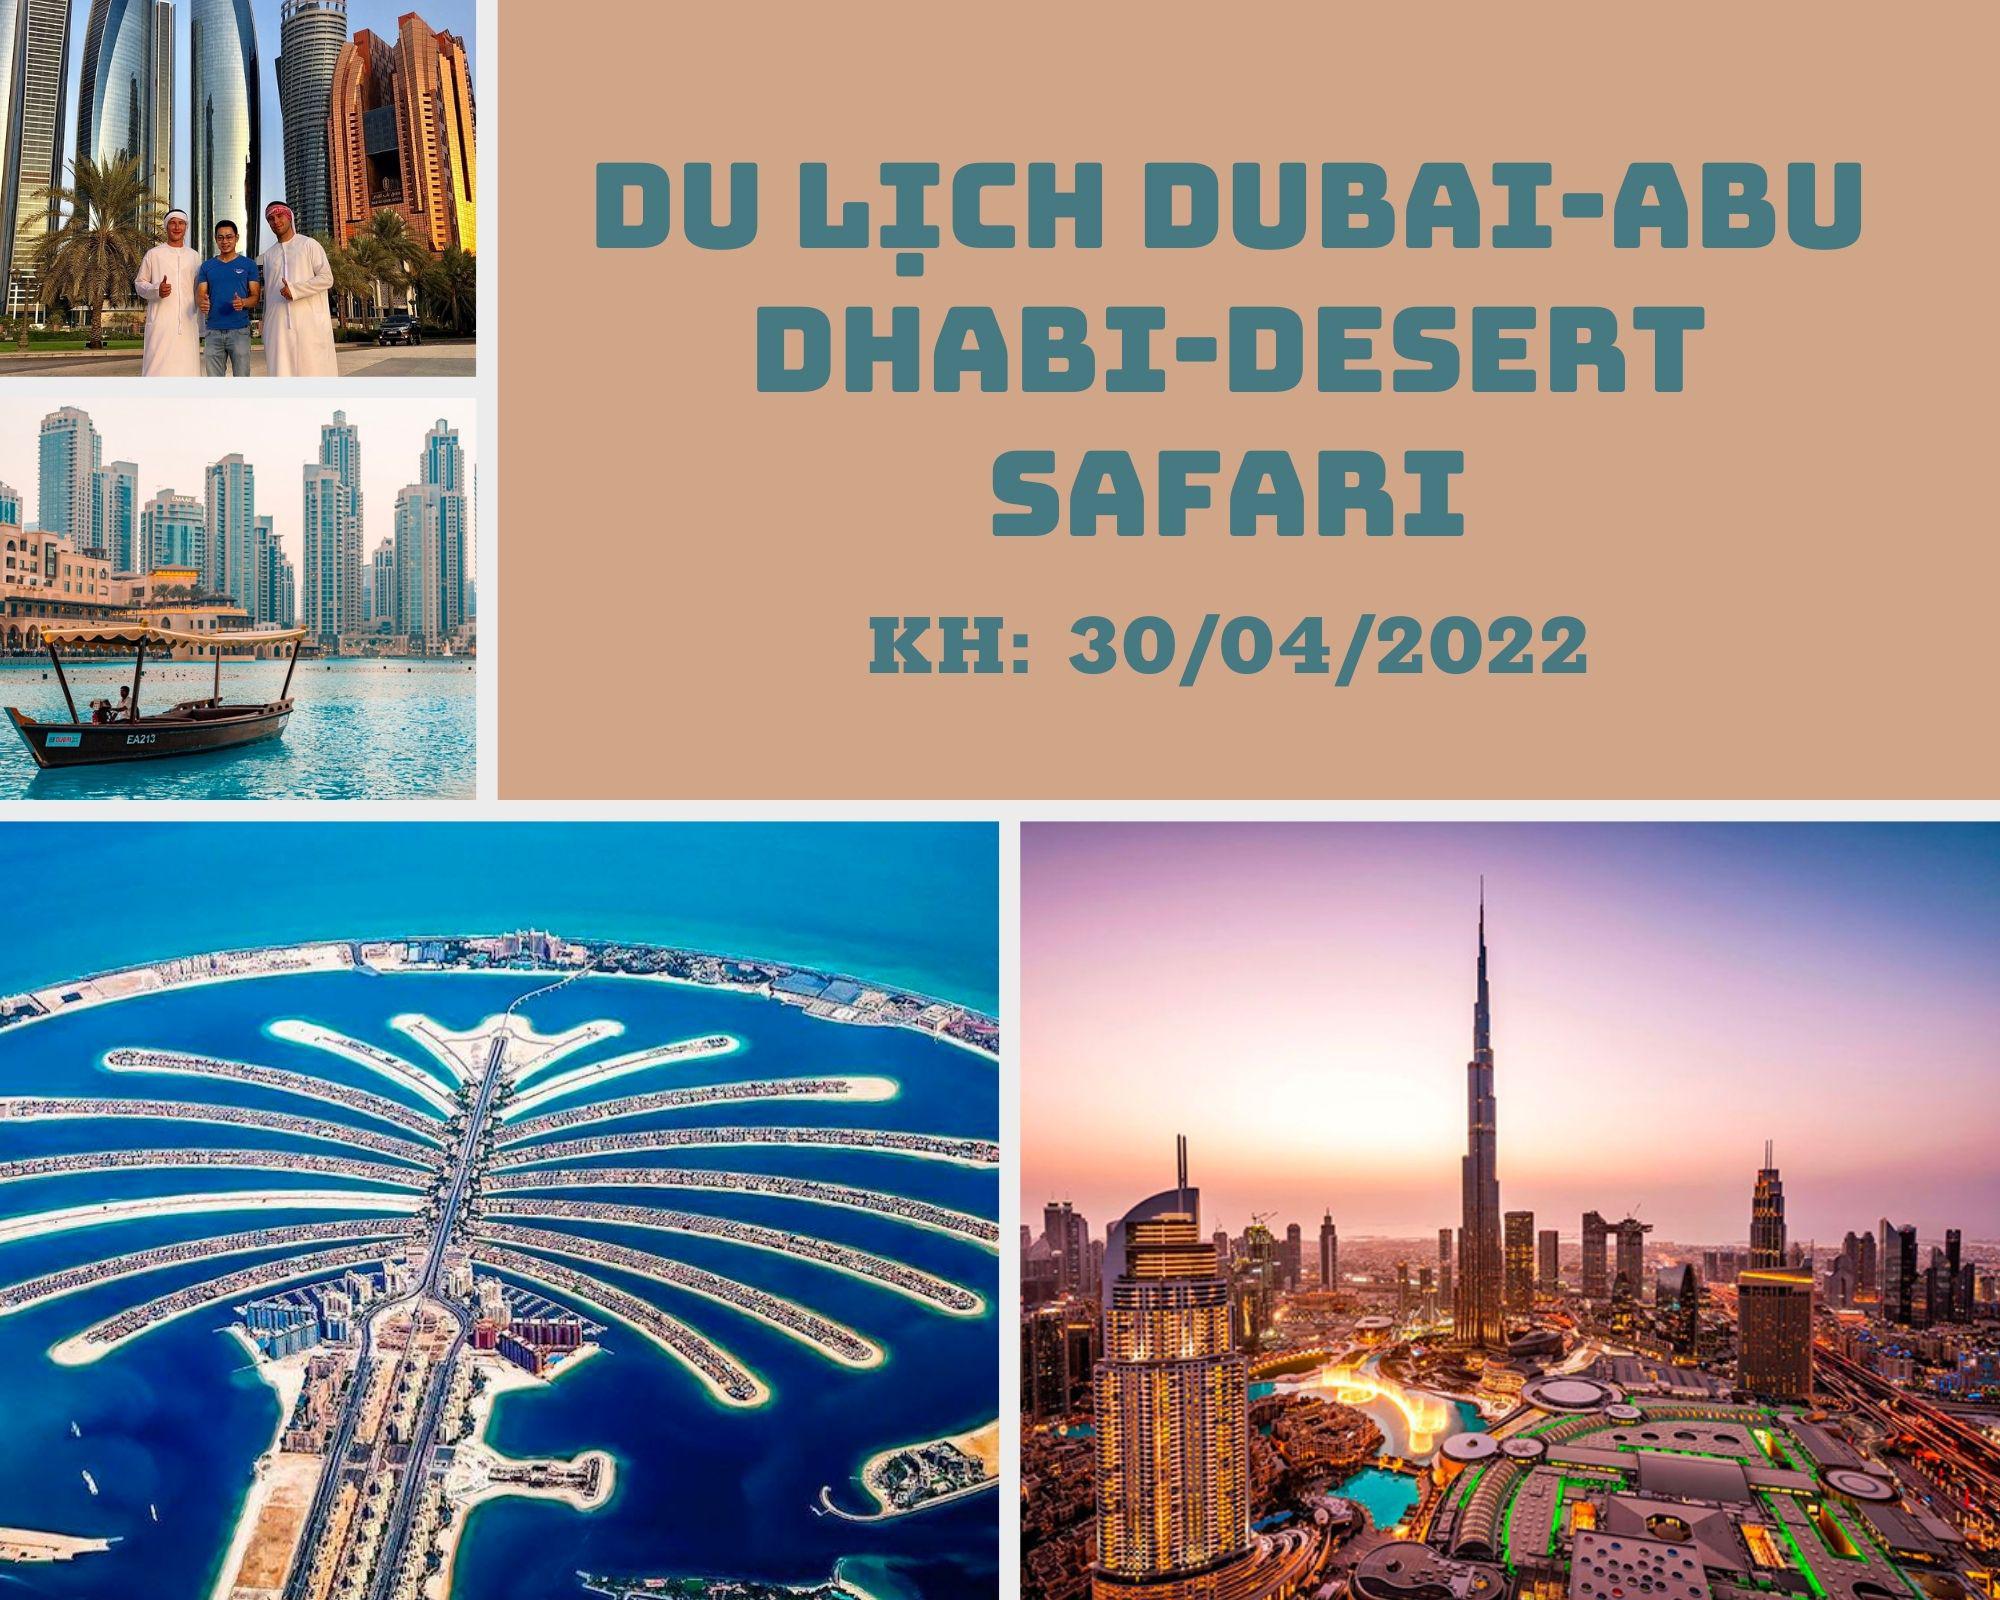 Du lịch Dubai-Abu Dhabi-Desert Safari ( Khách sạn 4 *, tặng vé công viên Ferrari World )